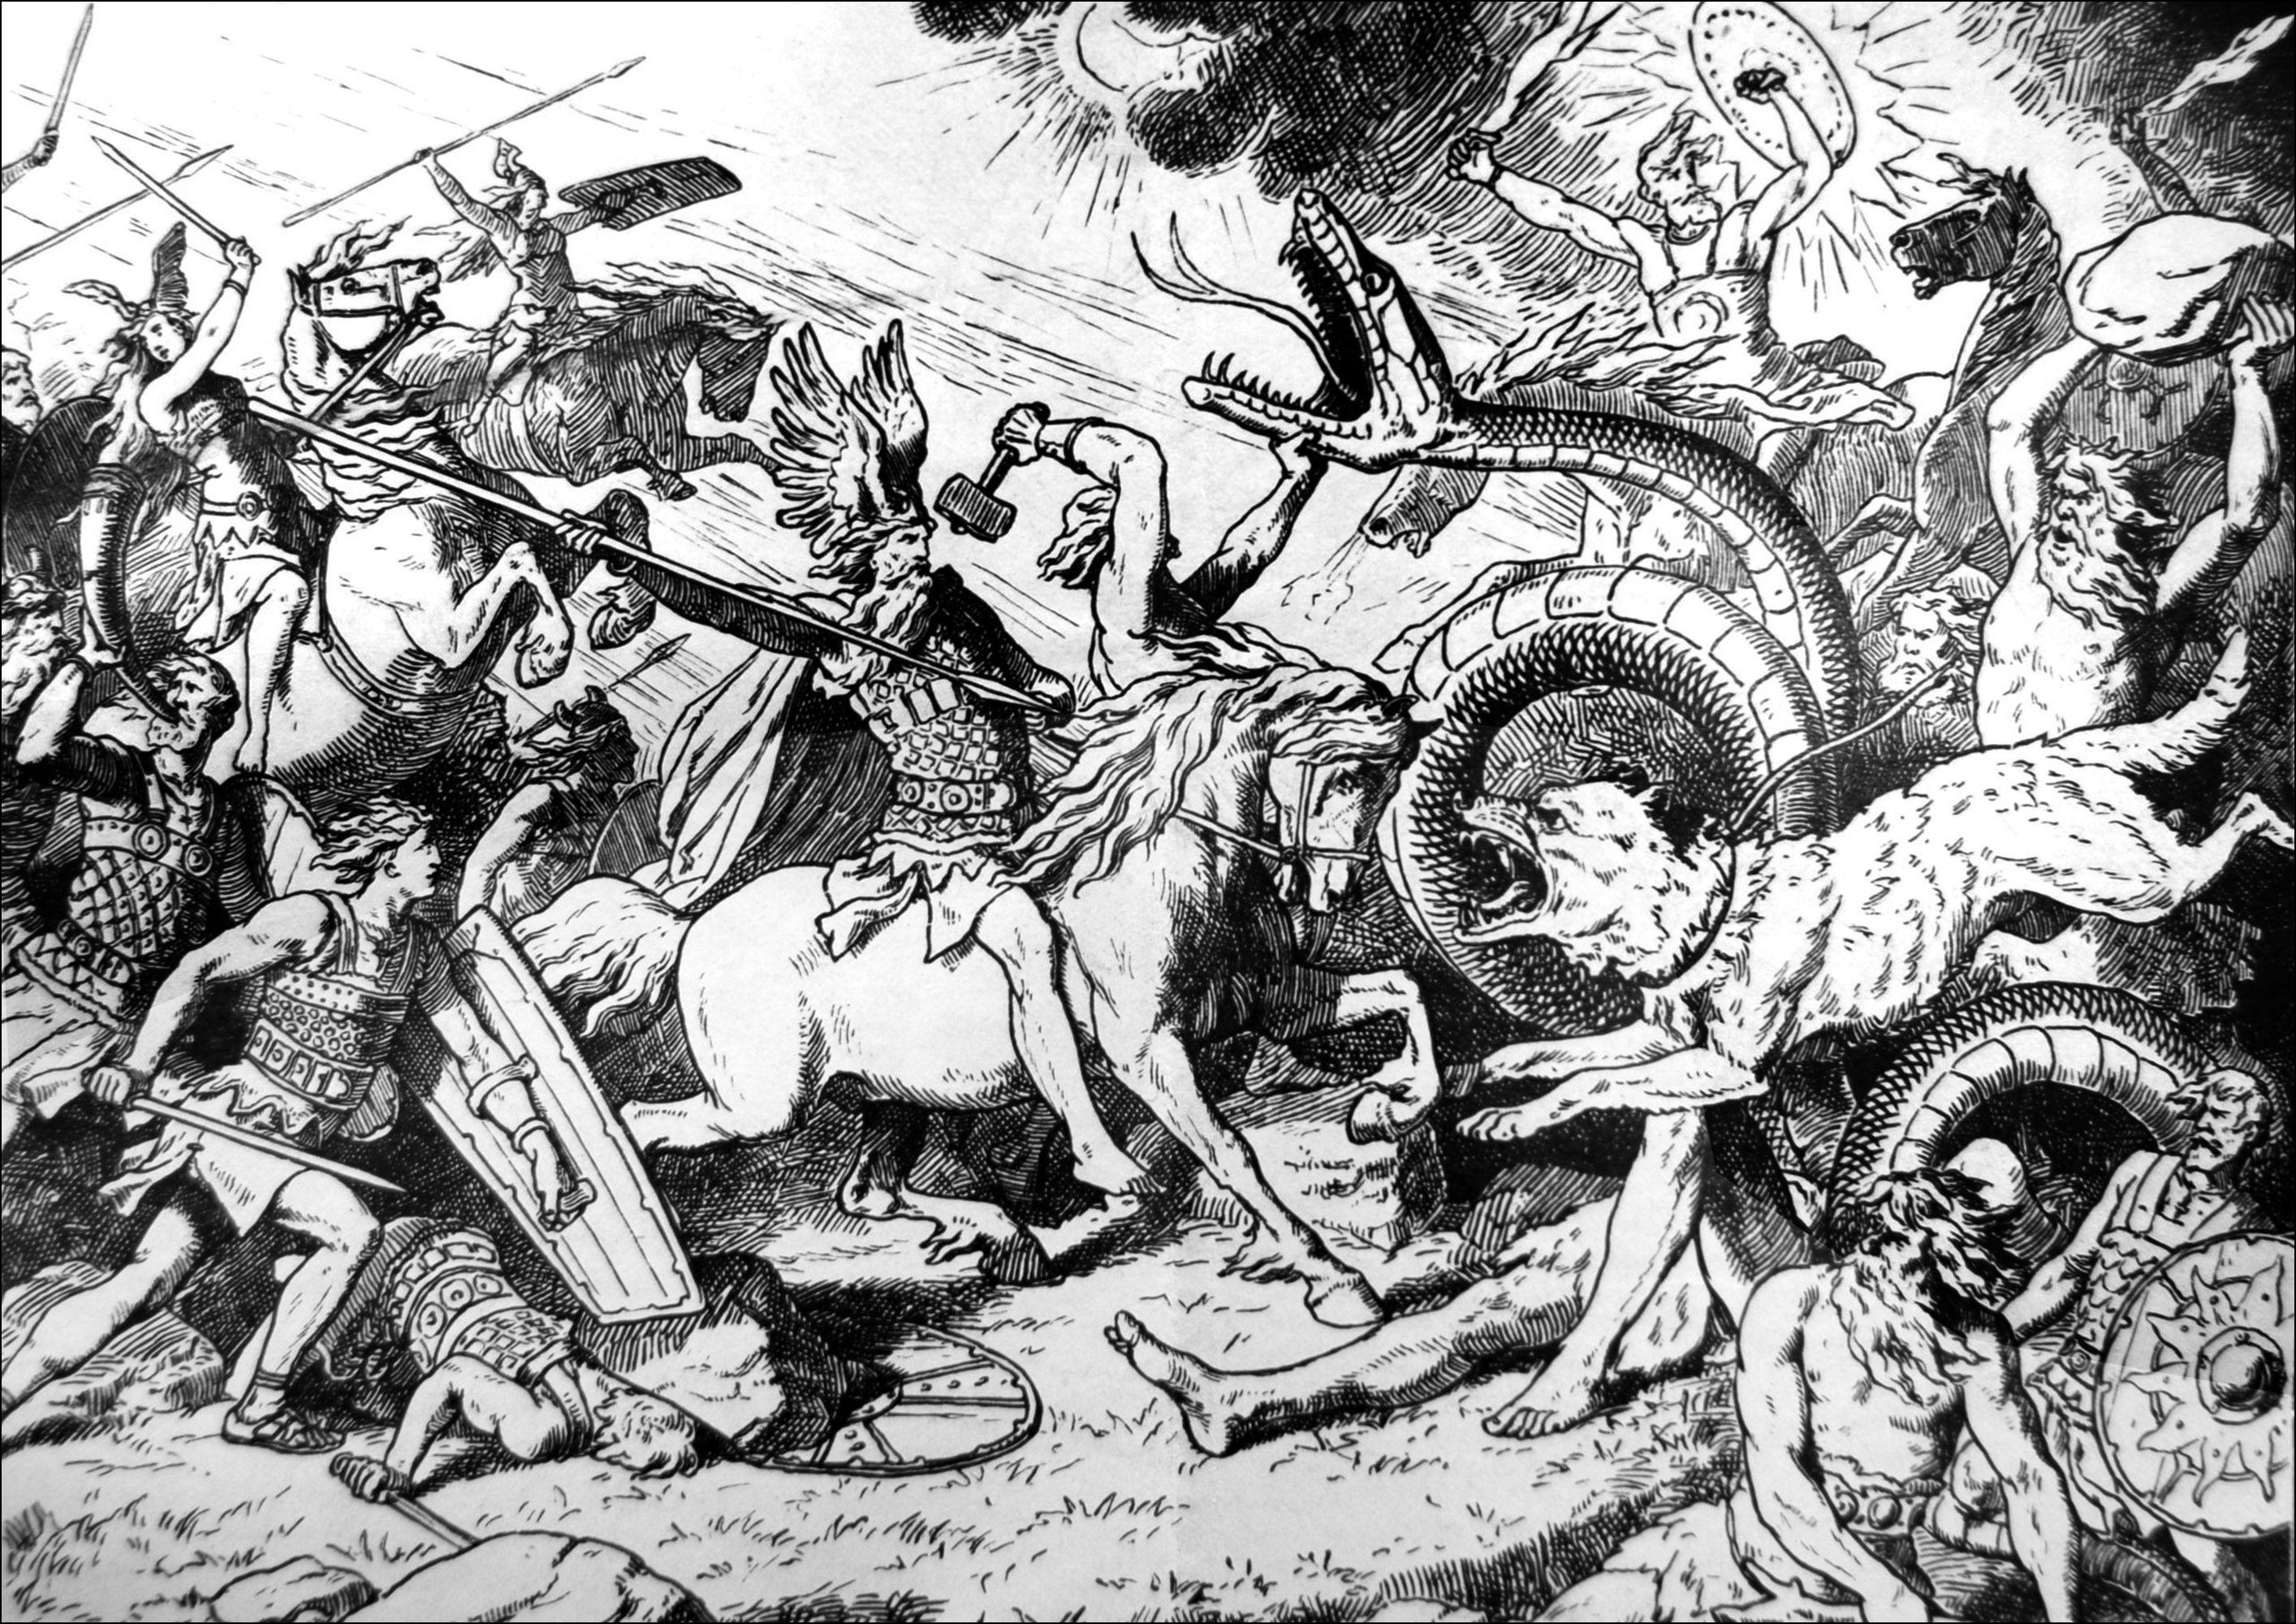 Le Ragnarok, jour du Jugement dernier chez les Vikings - illustration de Johannes Gehrts (1855, 1921). Le Ragnarök est l’apocalypse dans la mythologie nordique. C’est une succession d’évènements qui mènent à la fin du monde.Au centre de la scène, on voit le dieu Odin monté sur son cheval Sleipnir, entouré de ses guerriers les plus loyaux, les Einherjar. Voyez vous le marteau de Thor? et Loki ?